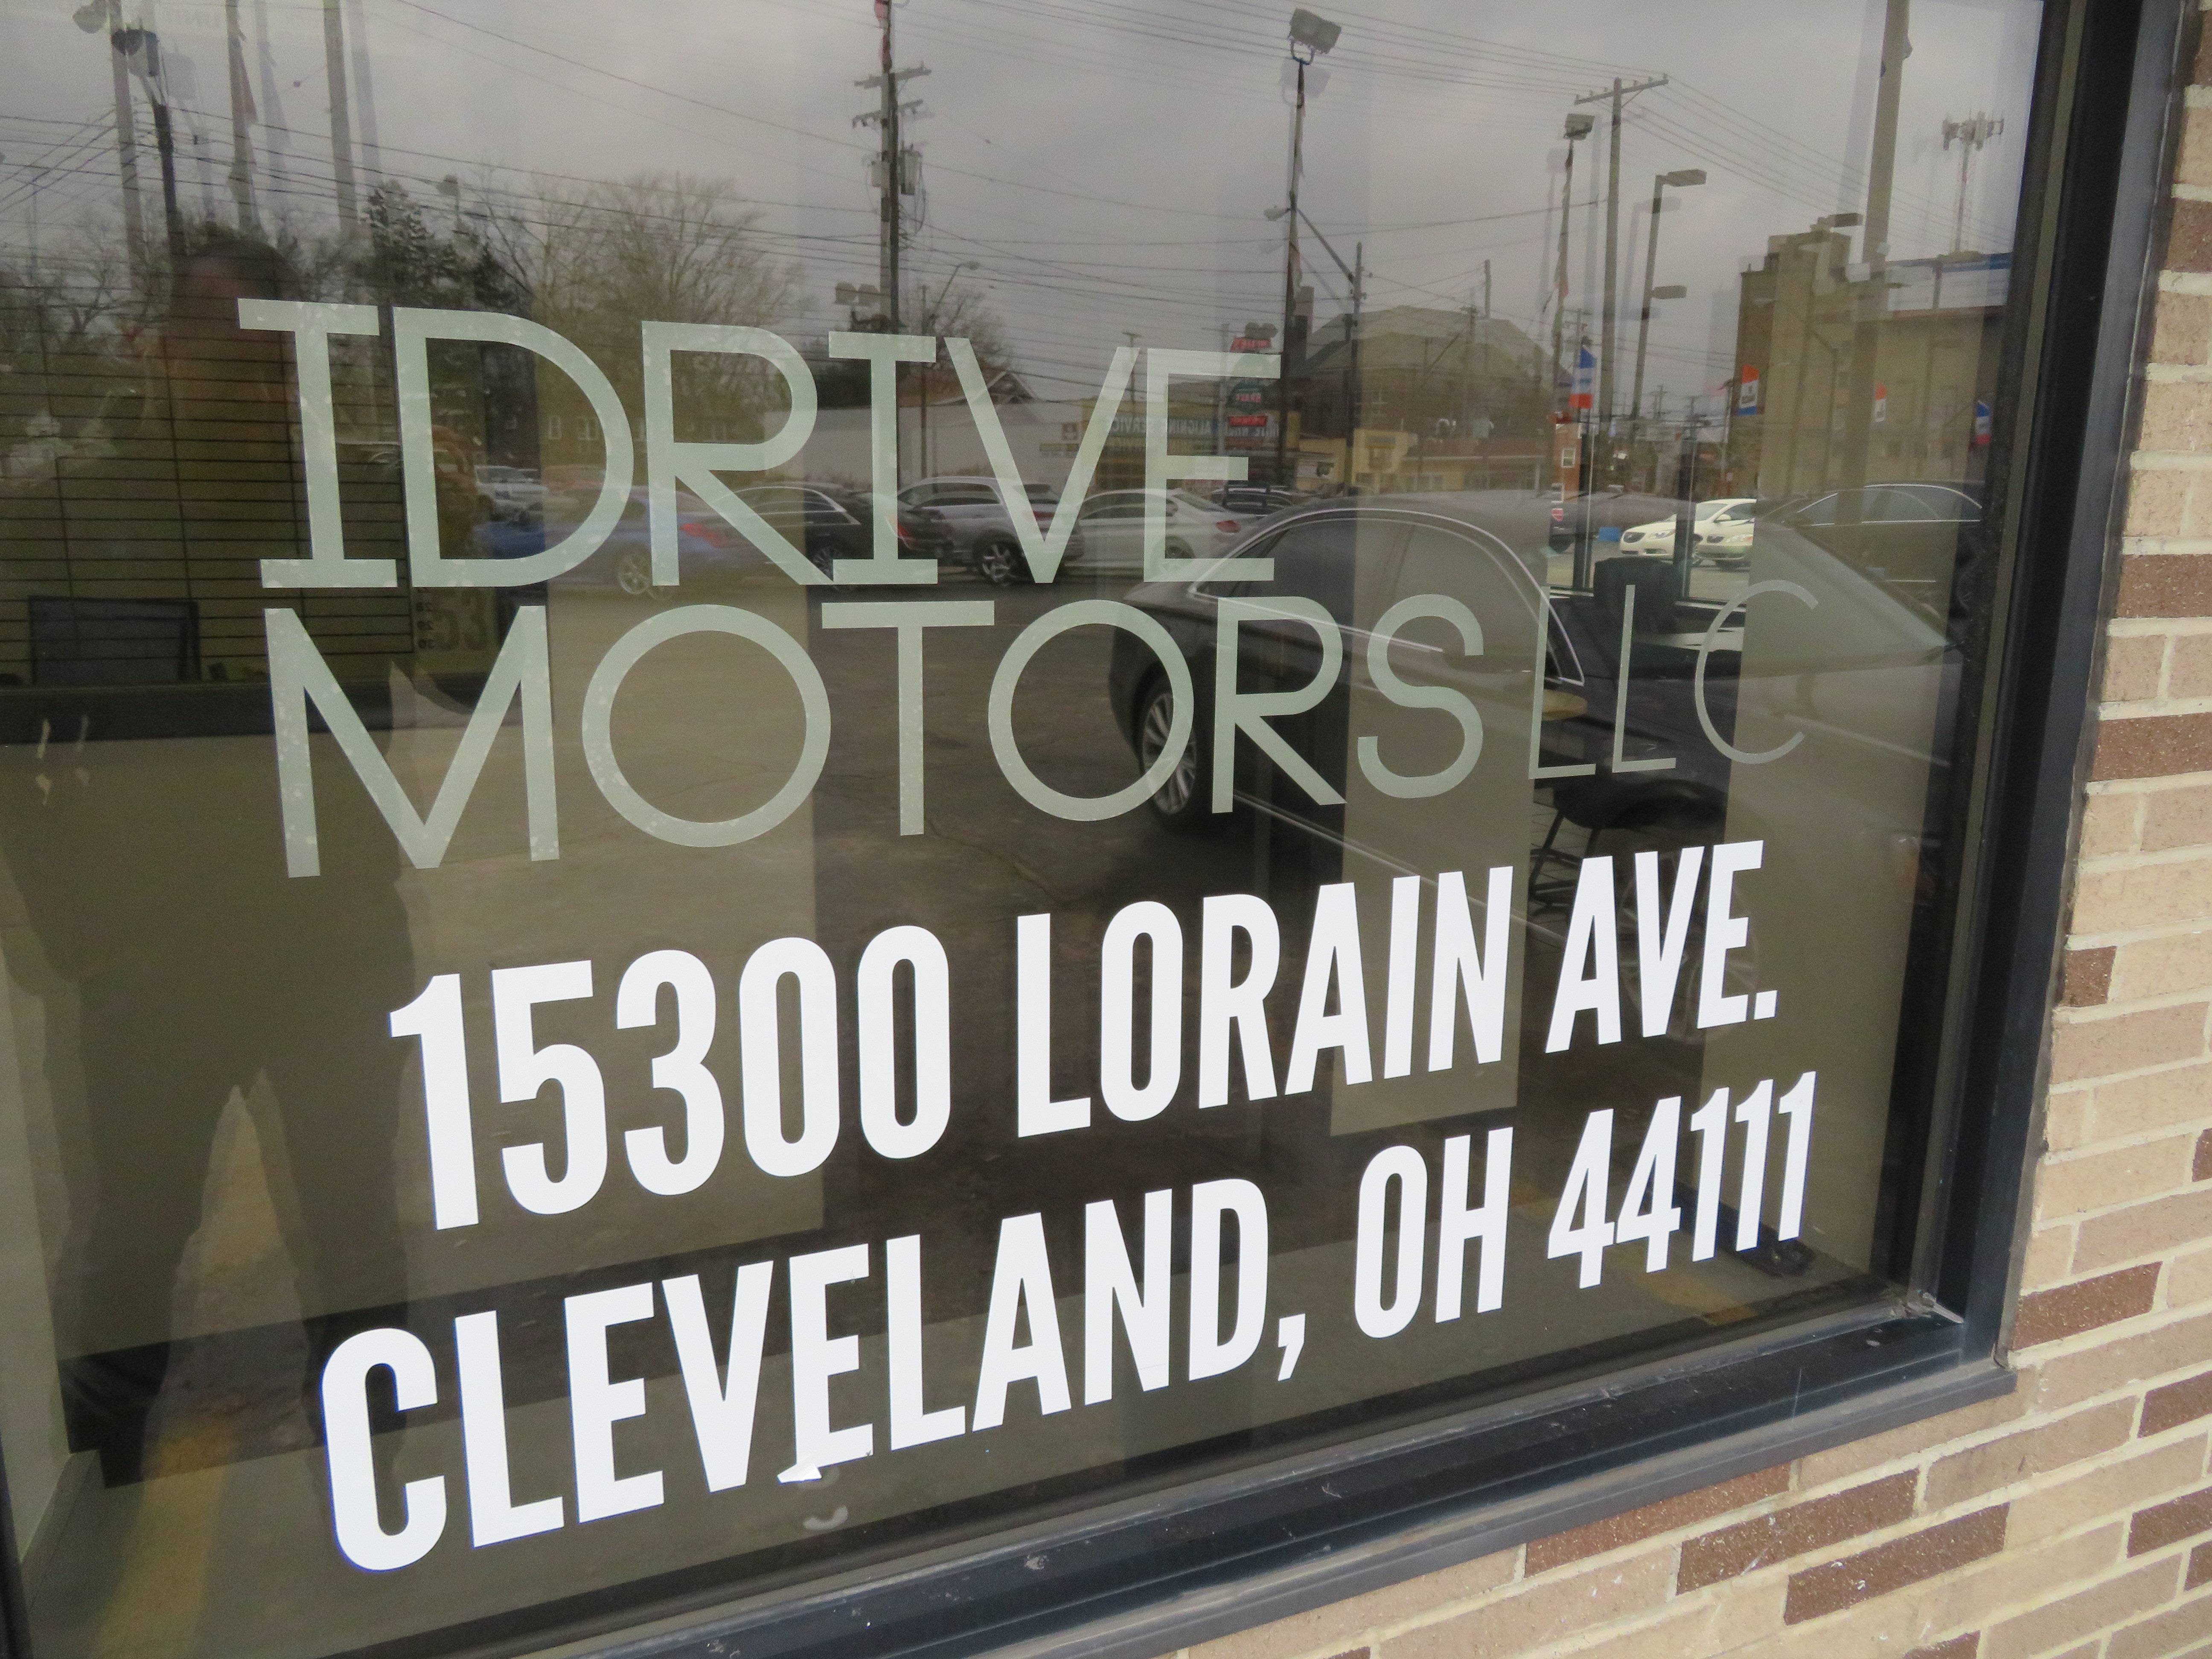 iDrive Motors Photo